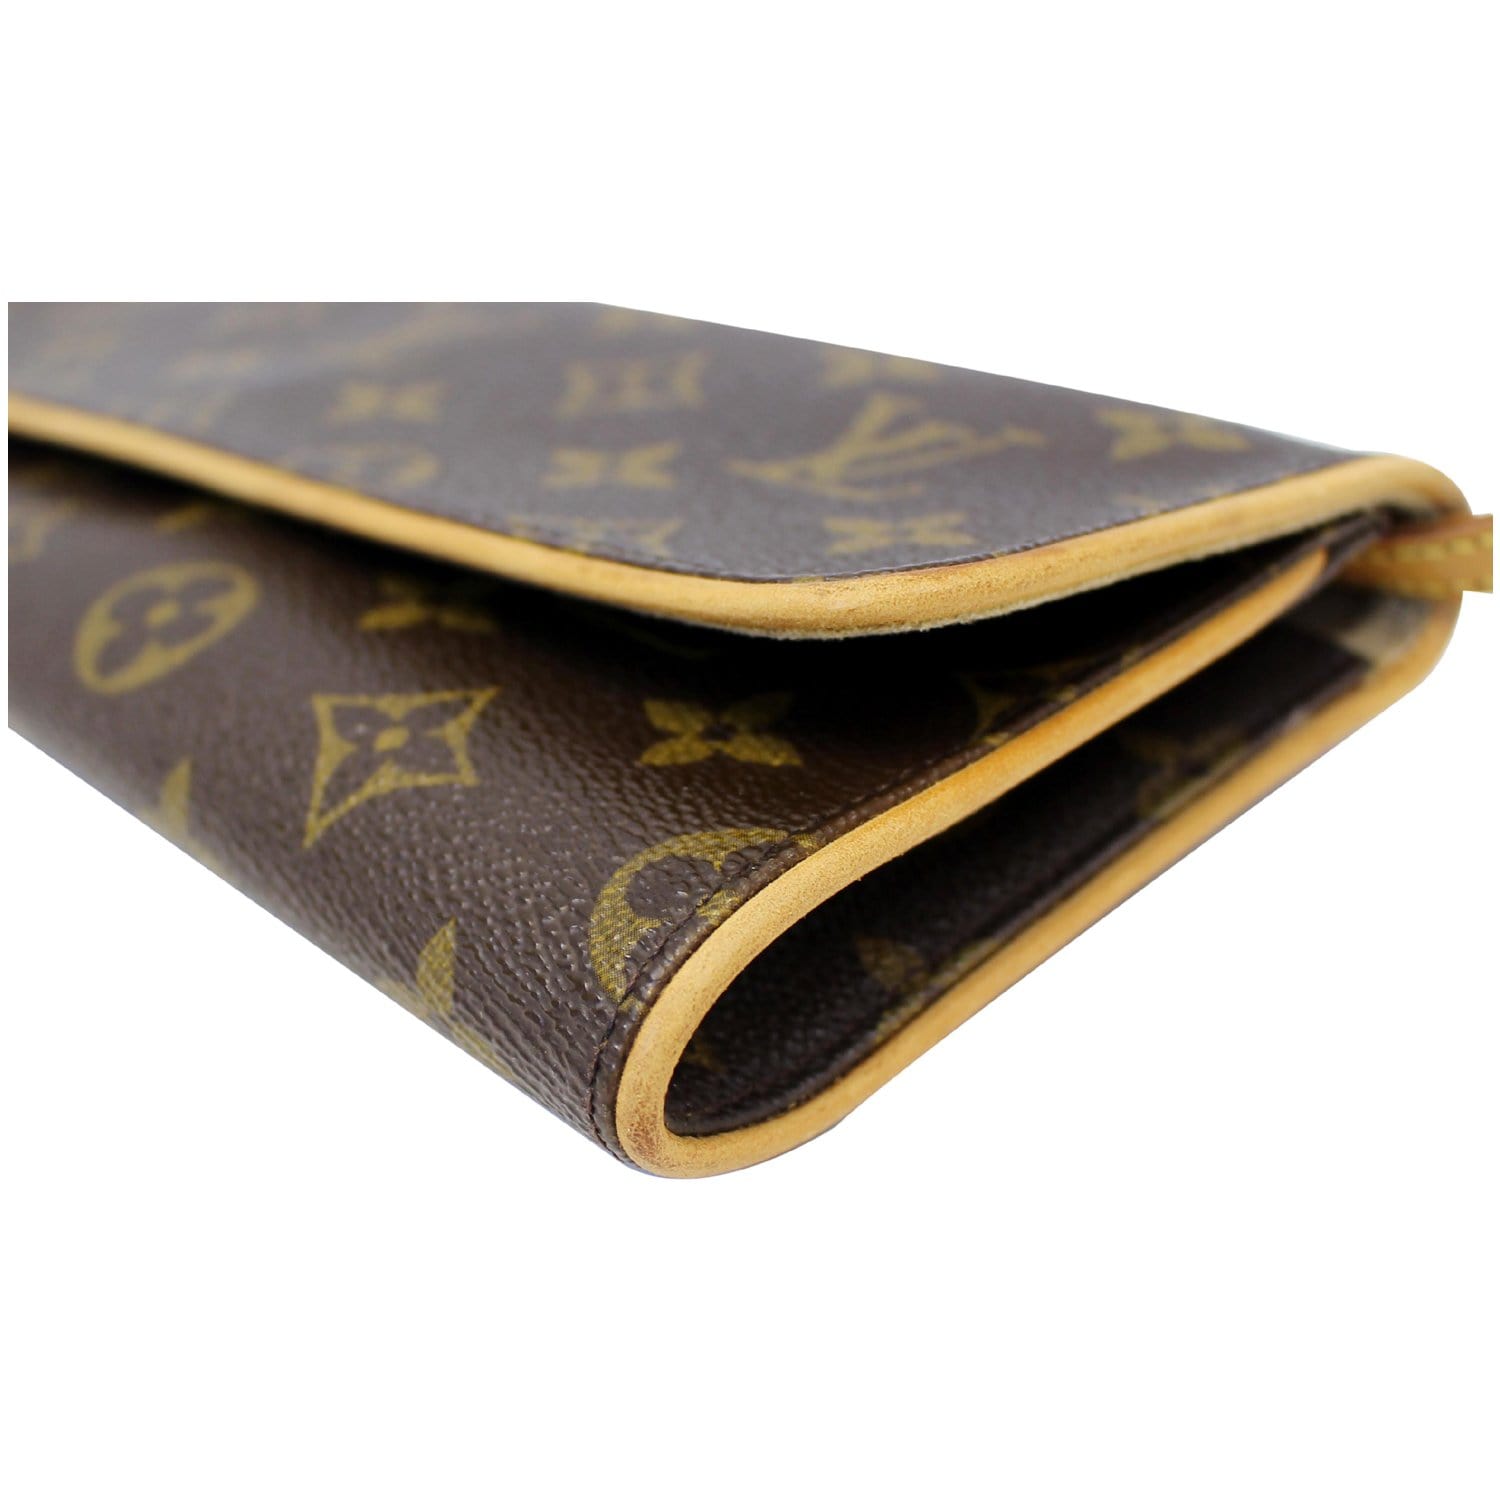 Authenticated Used Louis Vuitton Shoulder Bag Pochette Twin Brown Monogram  M51852 Canvas Nume FL1000 LOUIS VUITTON Clutch 2way Flap Women's LV 